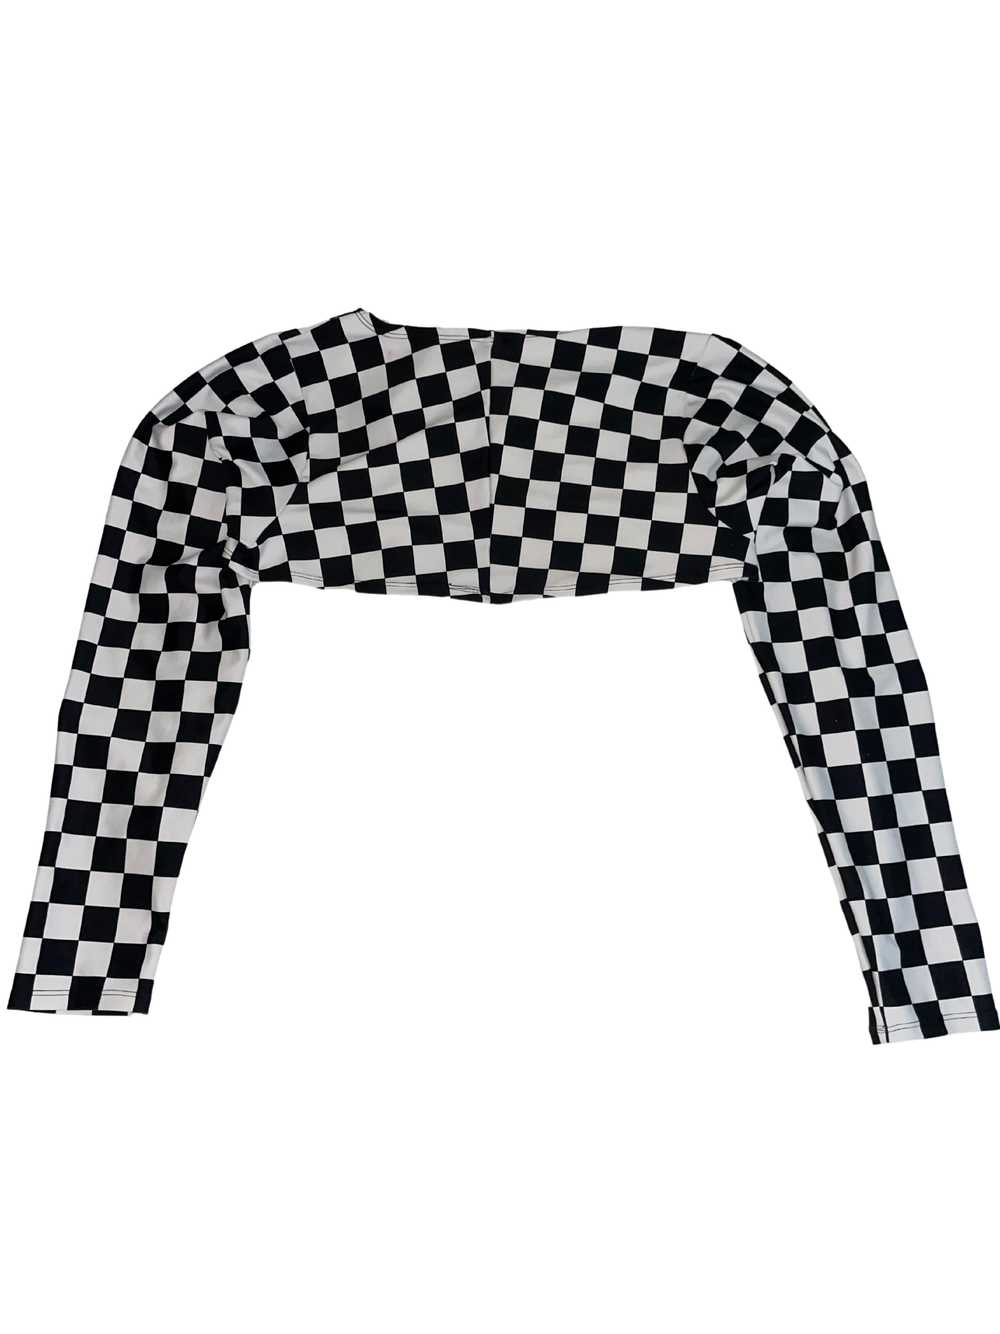 Freedom Rave Wear Checkered Shrug - image 3